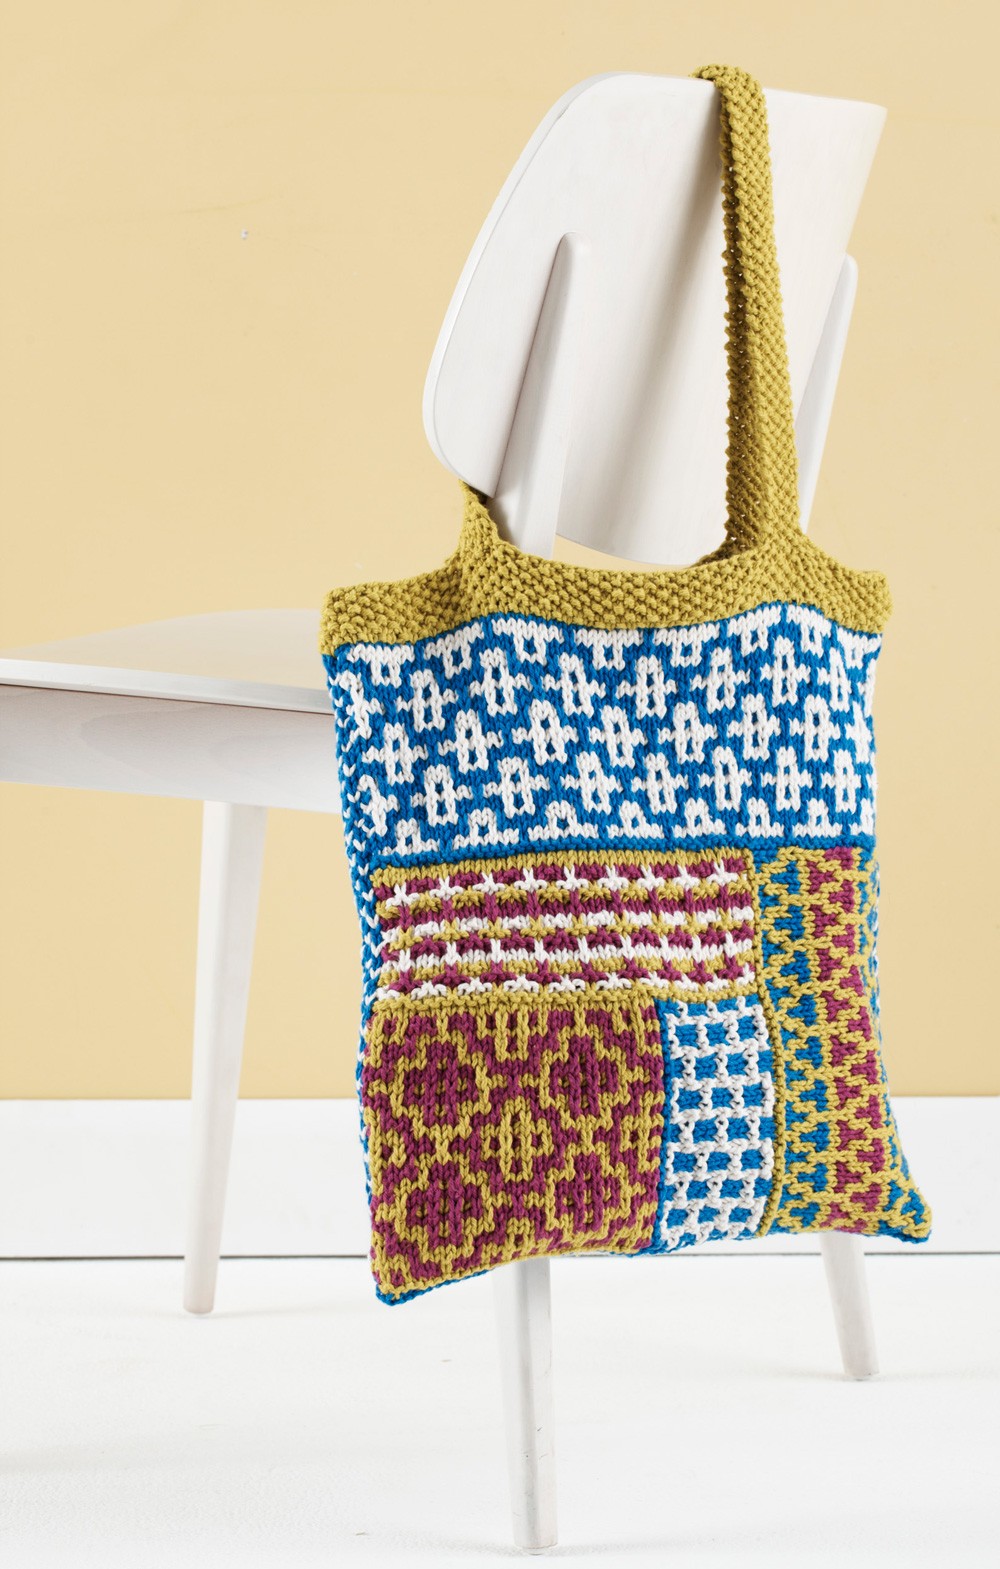 Slip Stitch Mosaic Tote Pattern Knit